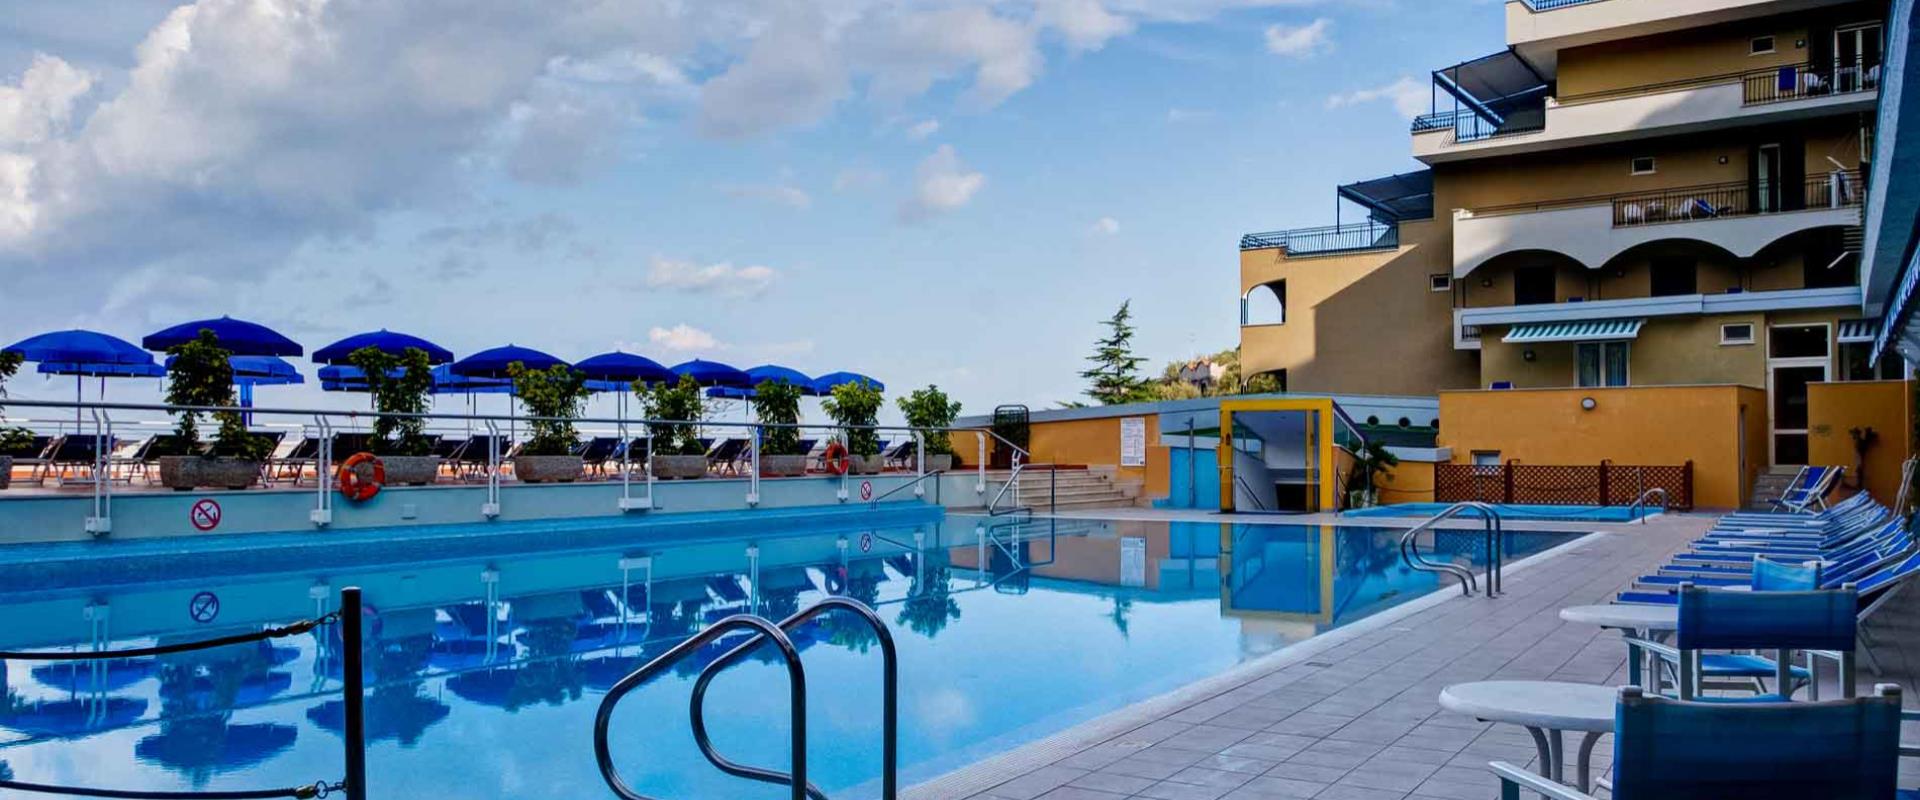 Soggiorna in uno splendido albergo con piscina a Sorrento e scopri i nostri servizi a 4 stelle